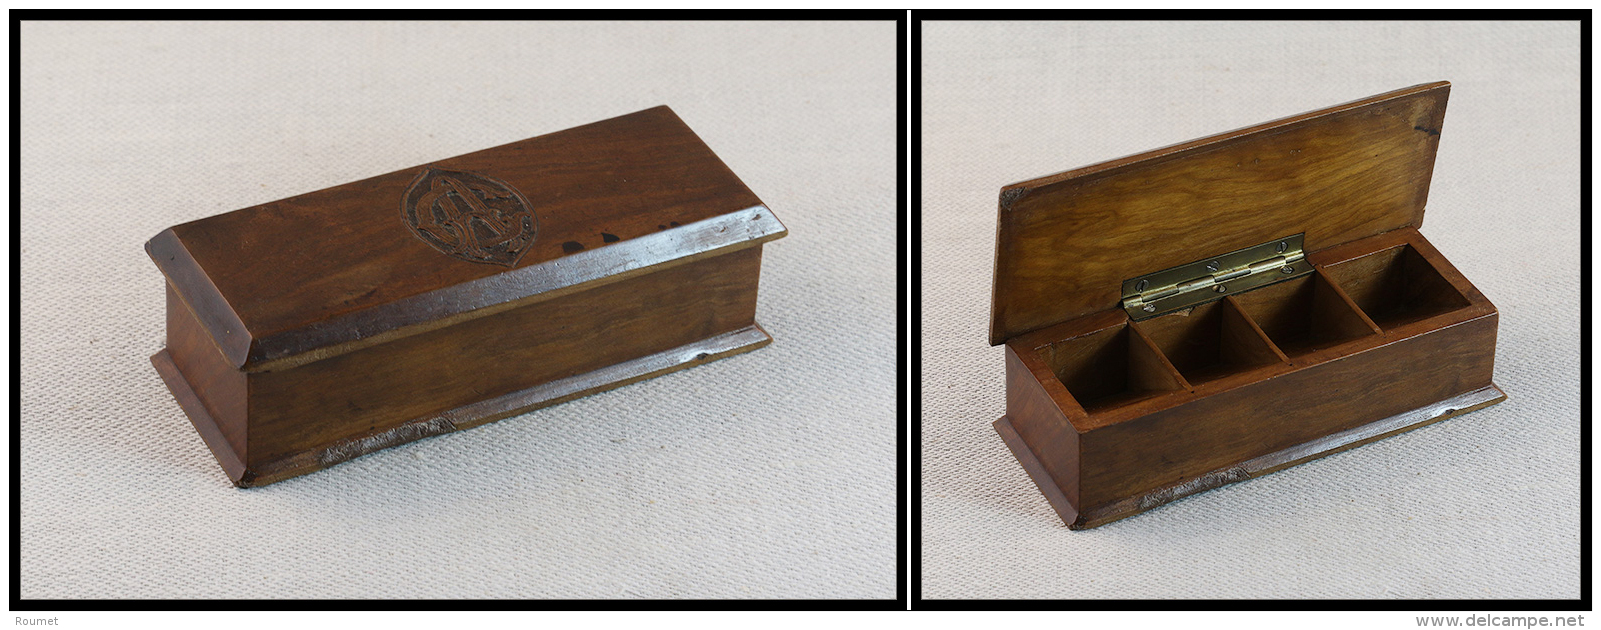 Boîte En Noyer Avec Monogramme Sur Le Dessus, 4 Comp., 118x47x35mm. - TB - Stamp Boxes